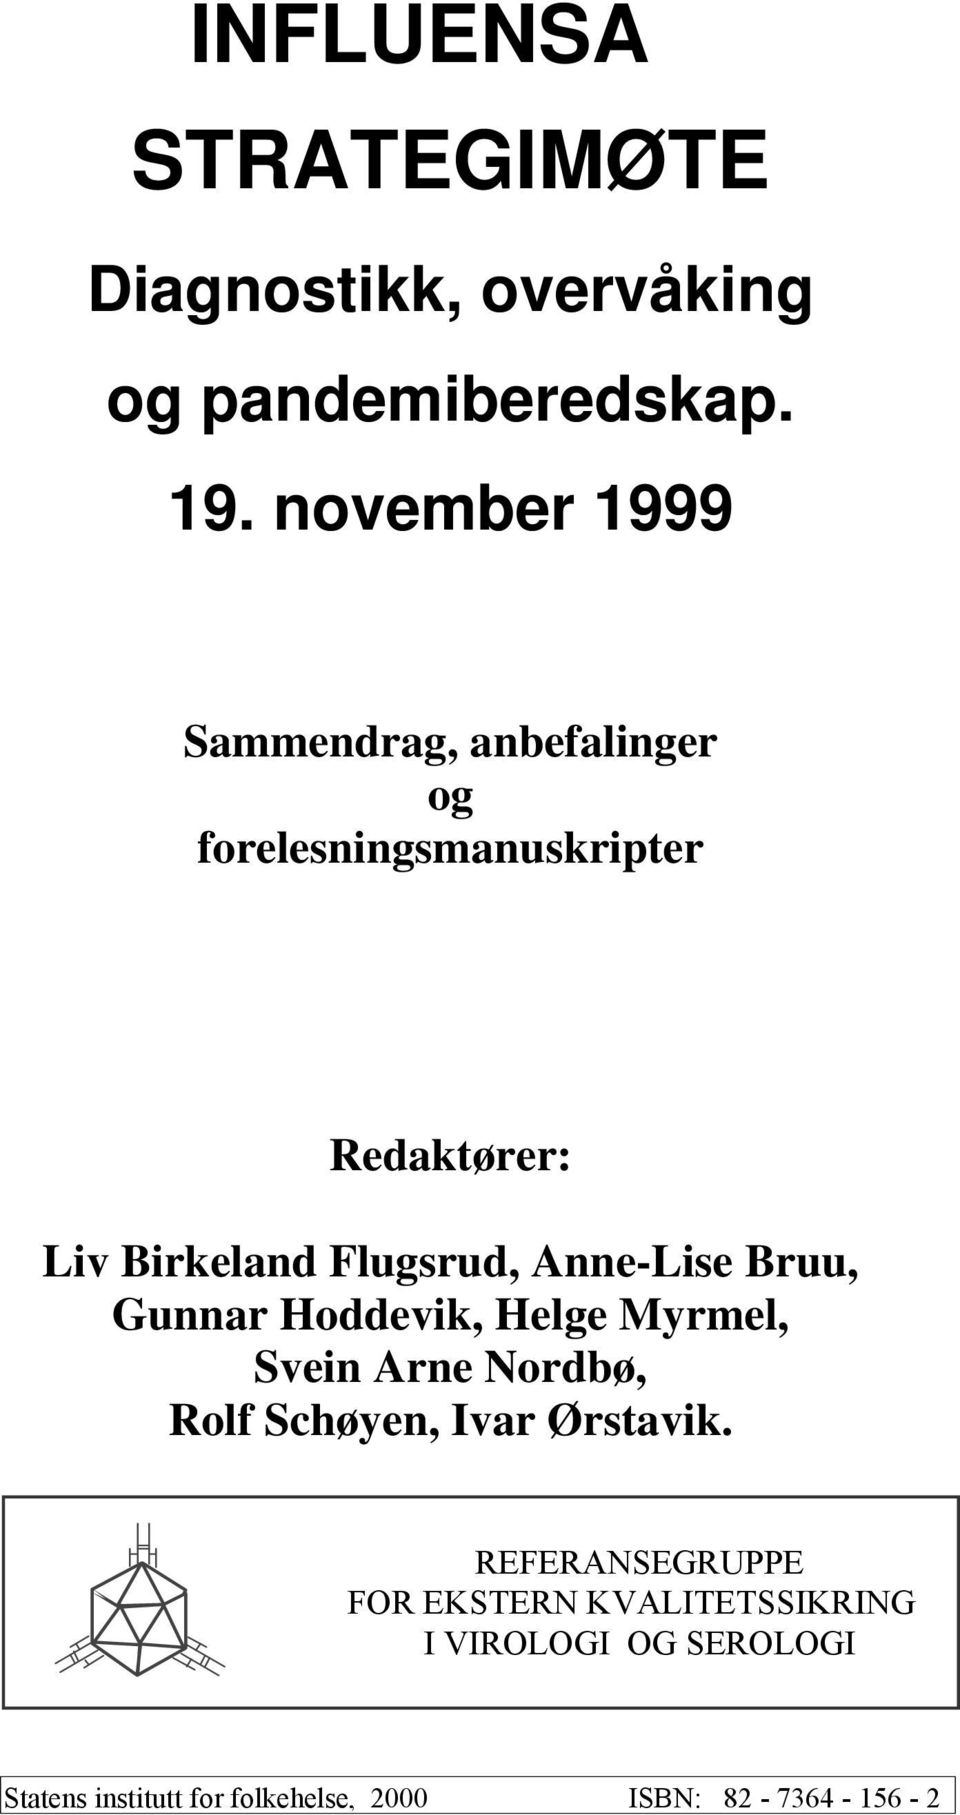 Flugsrud, Anne-Lise Bruu, Gunnar Hoddevik, Helge Myrmel, Svein Arne Nordbø, Rolf Schøyen, Ivar